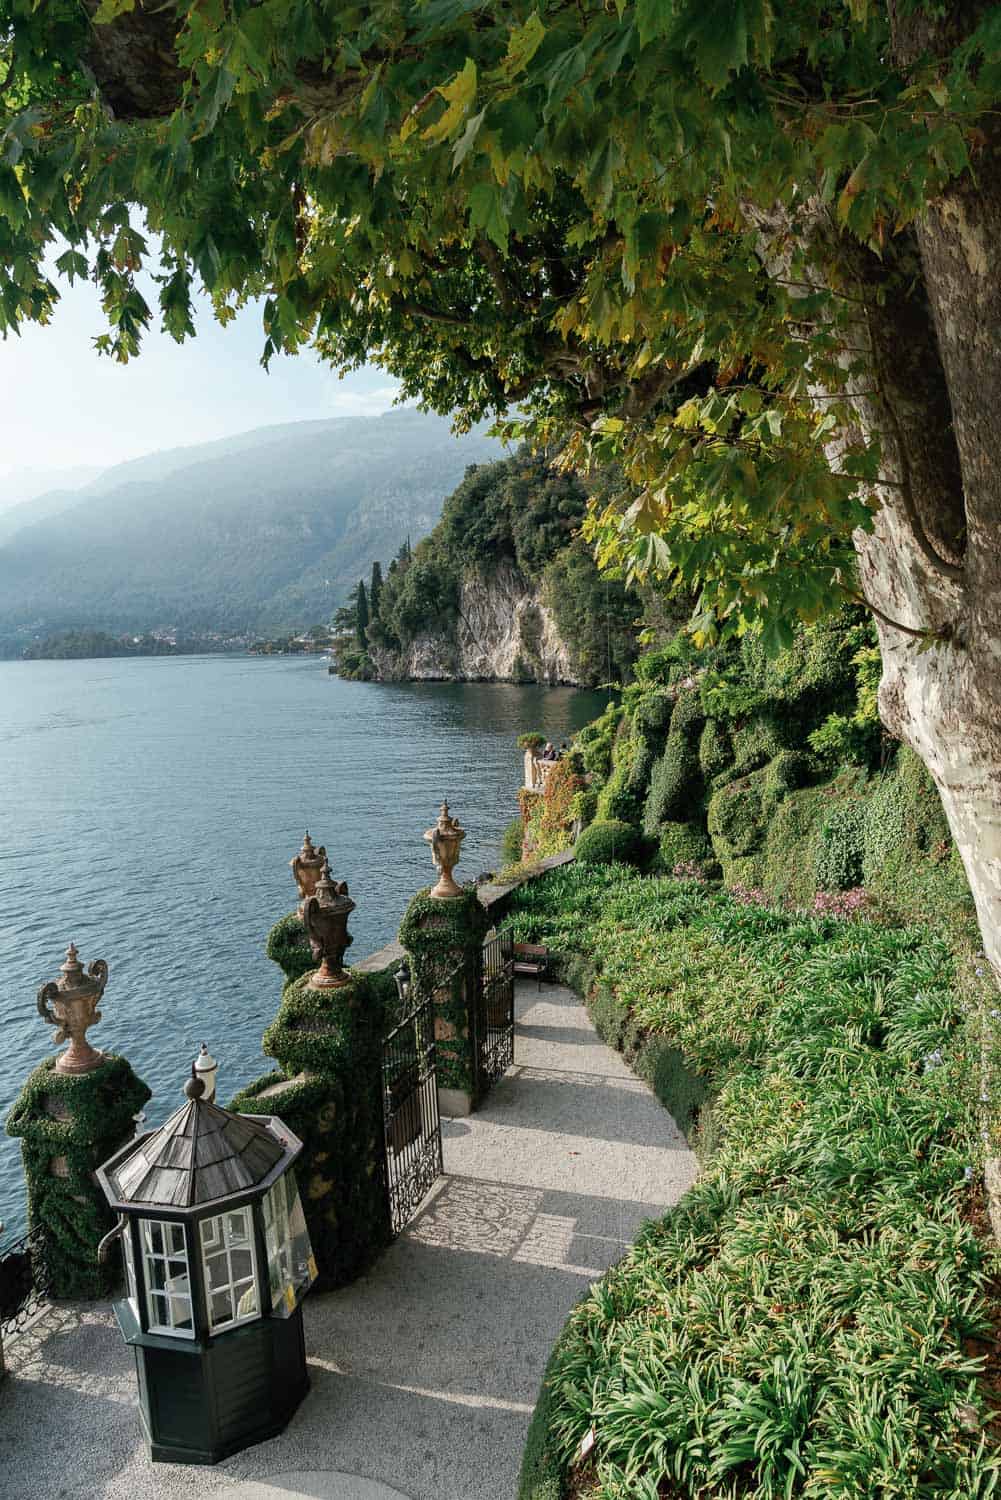 Villa del Balbianello Wedding Venue Como Italy, Lake Como Wedding Photographer, Theresa Kelly Photography